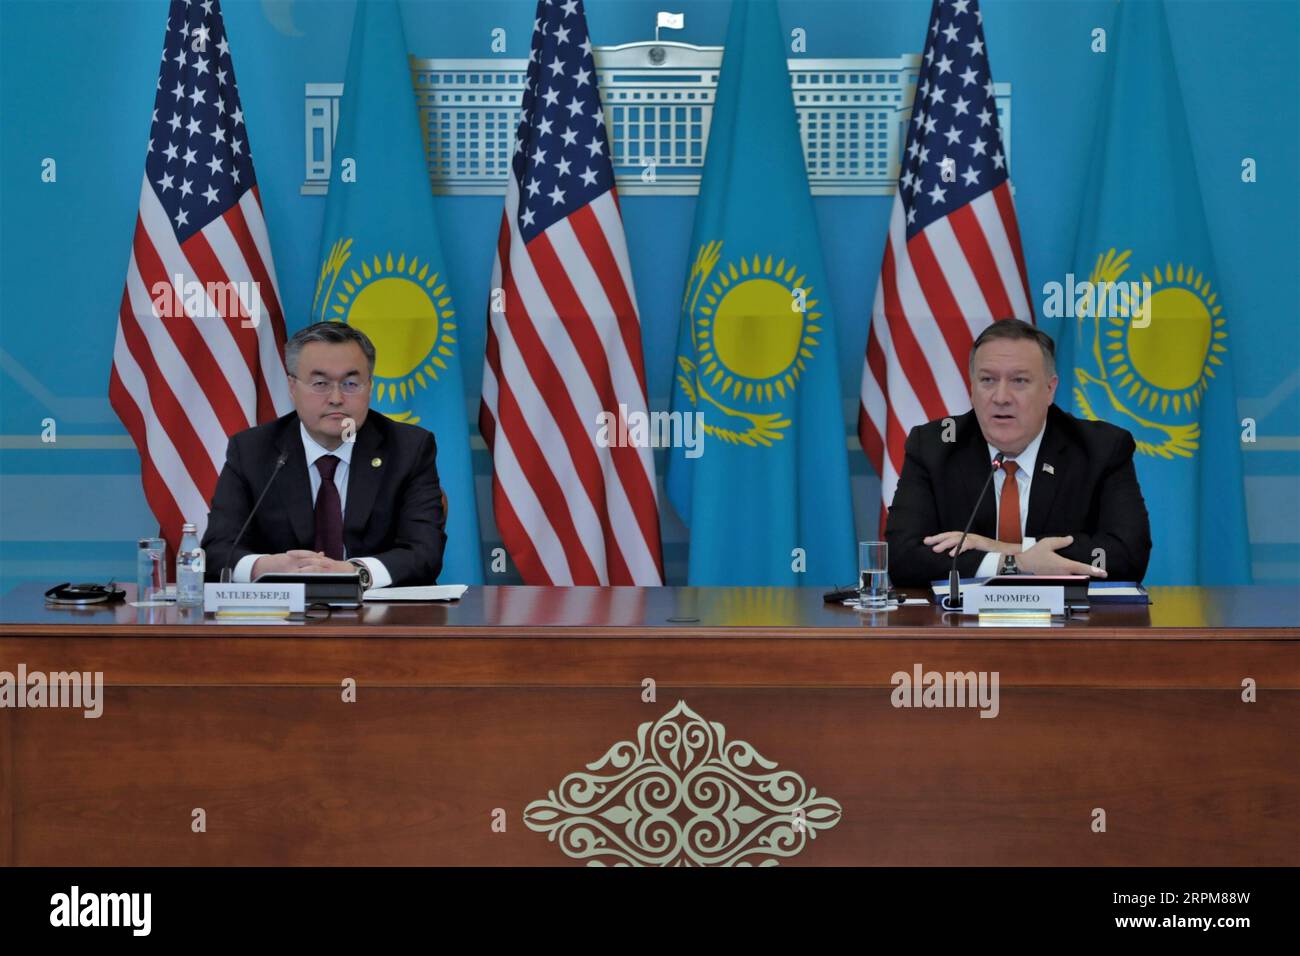 200202 -- NUR-SULTAN, 2 febbraio 2020 -- in visita al Segretario di Stato degli Stati Uniti Mike Pompeo e al Ministro degli Esteri kazako Mukhtar Tleuberdi partecipano a una conferenza stampa congiunta a Nur-Sultan, Kazakistan, 2 febbraio 2020. Pompeo ha detto domenica che il Kazakistan è un partner affidabile degli Stati Uniti in Asia centrale e si è impegnato a promuovere il partenariato strategico rafforzato tra i due paesi. Foto di Kalizhan Ospanov/Xinhua KAZAKISTAN-NUR-SULTAN-U.S.-POMPEO-VISIT RenxJun PUBLICATIONxNOTxINxCHN Foto Stock